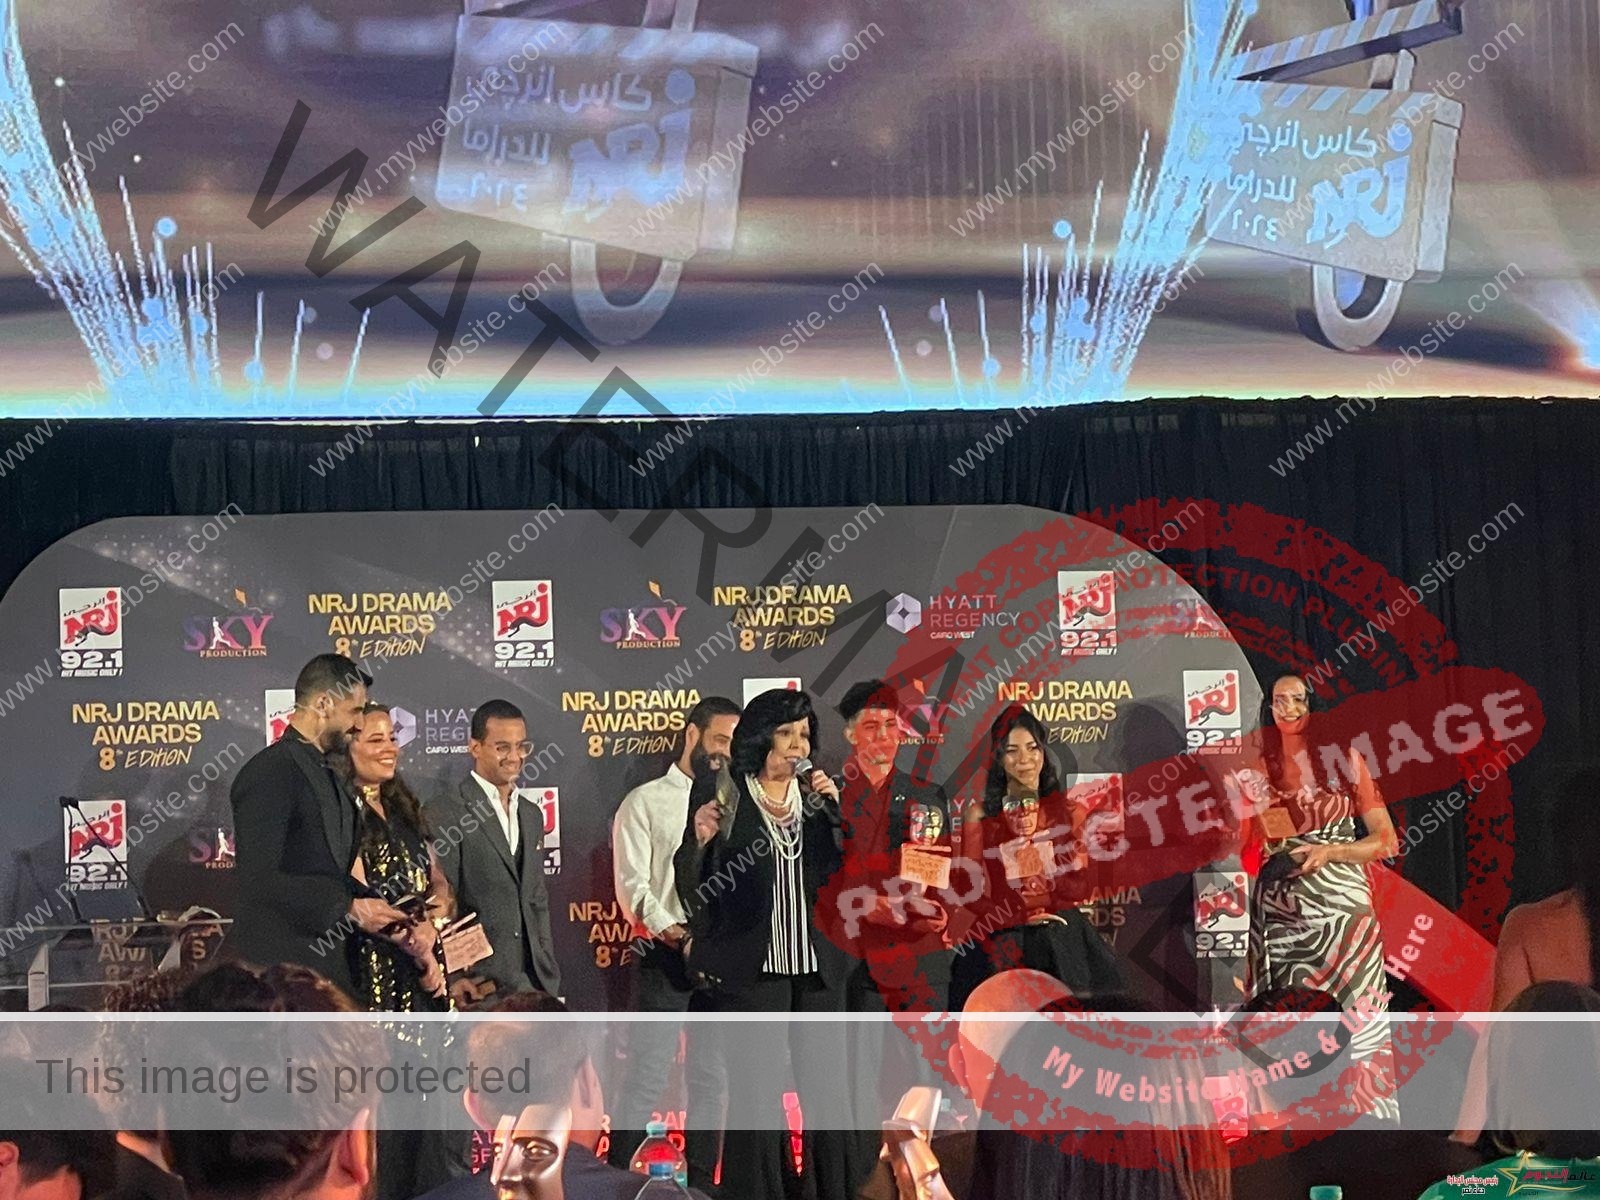 إسعاد يونس تقدم جوائز أبطال مسلسل كامل العدد+١ في حفل كأس إنرجي للدراما